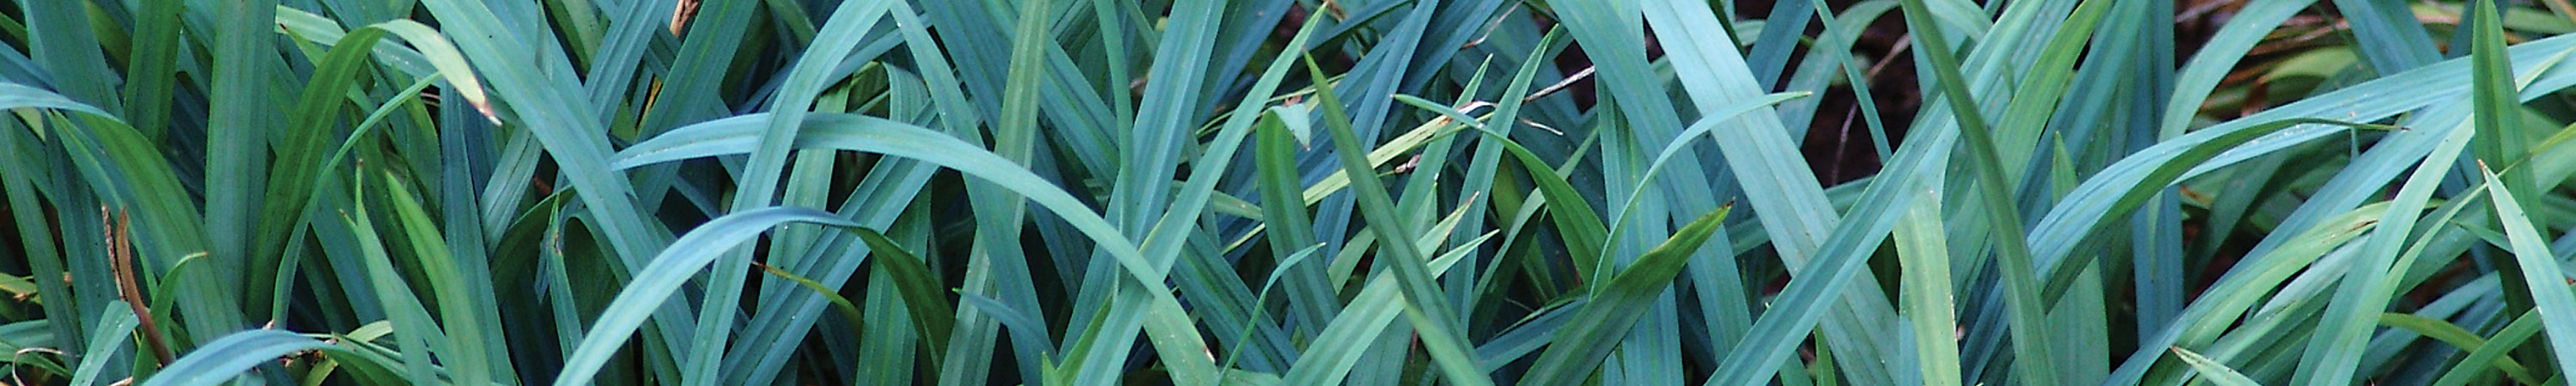 Carex / Sedge